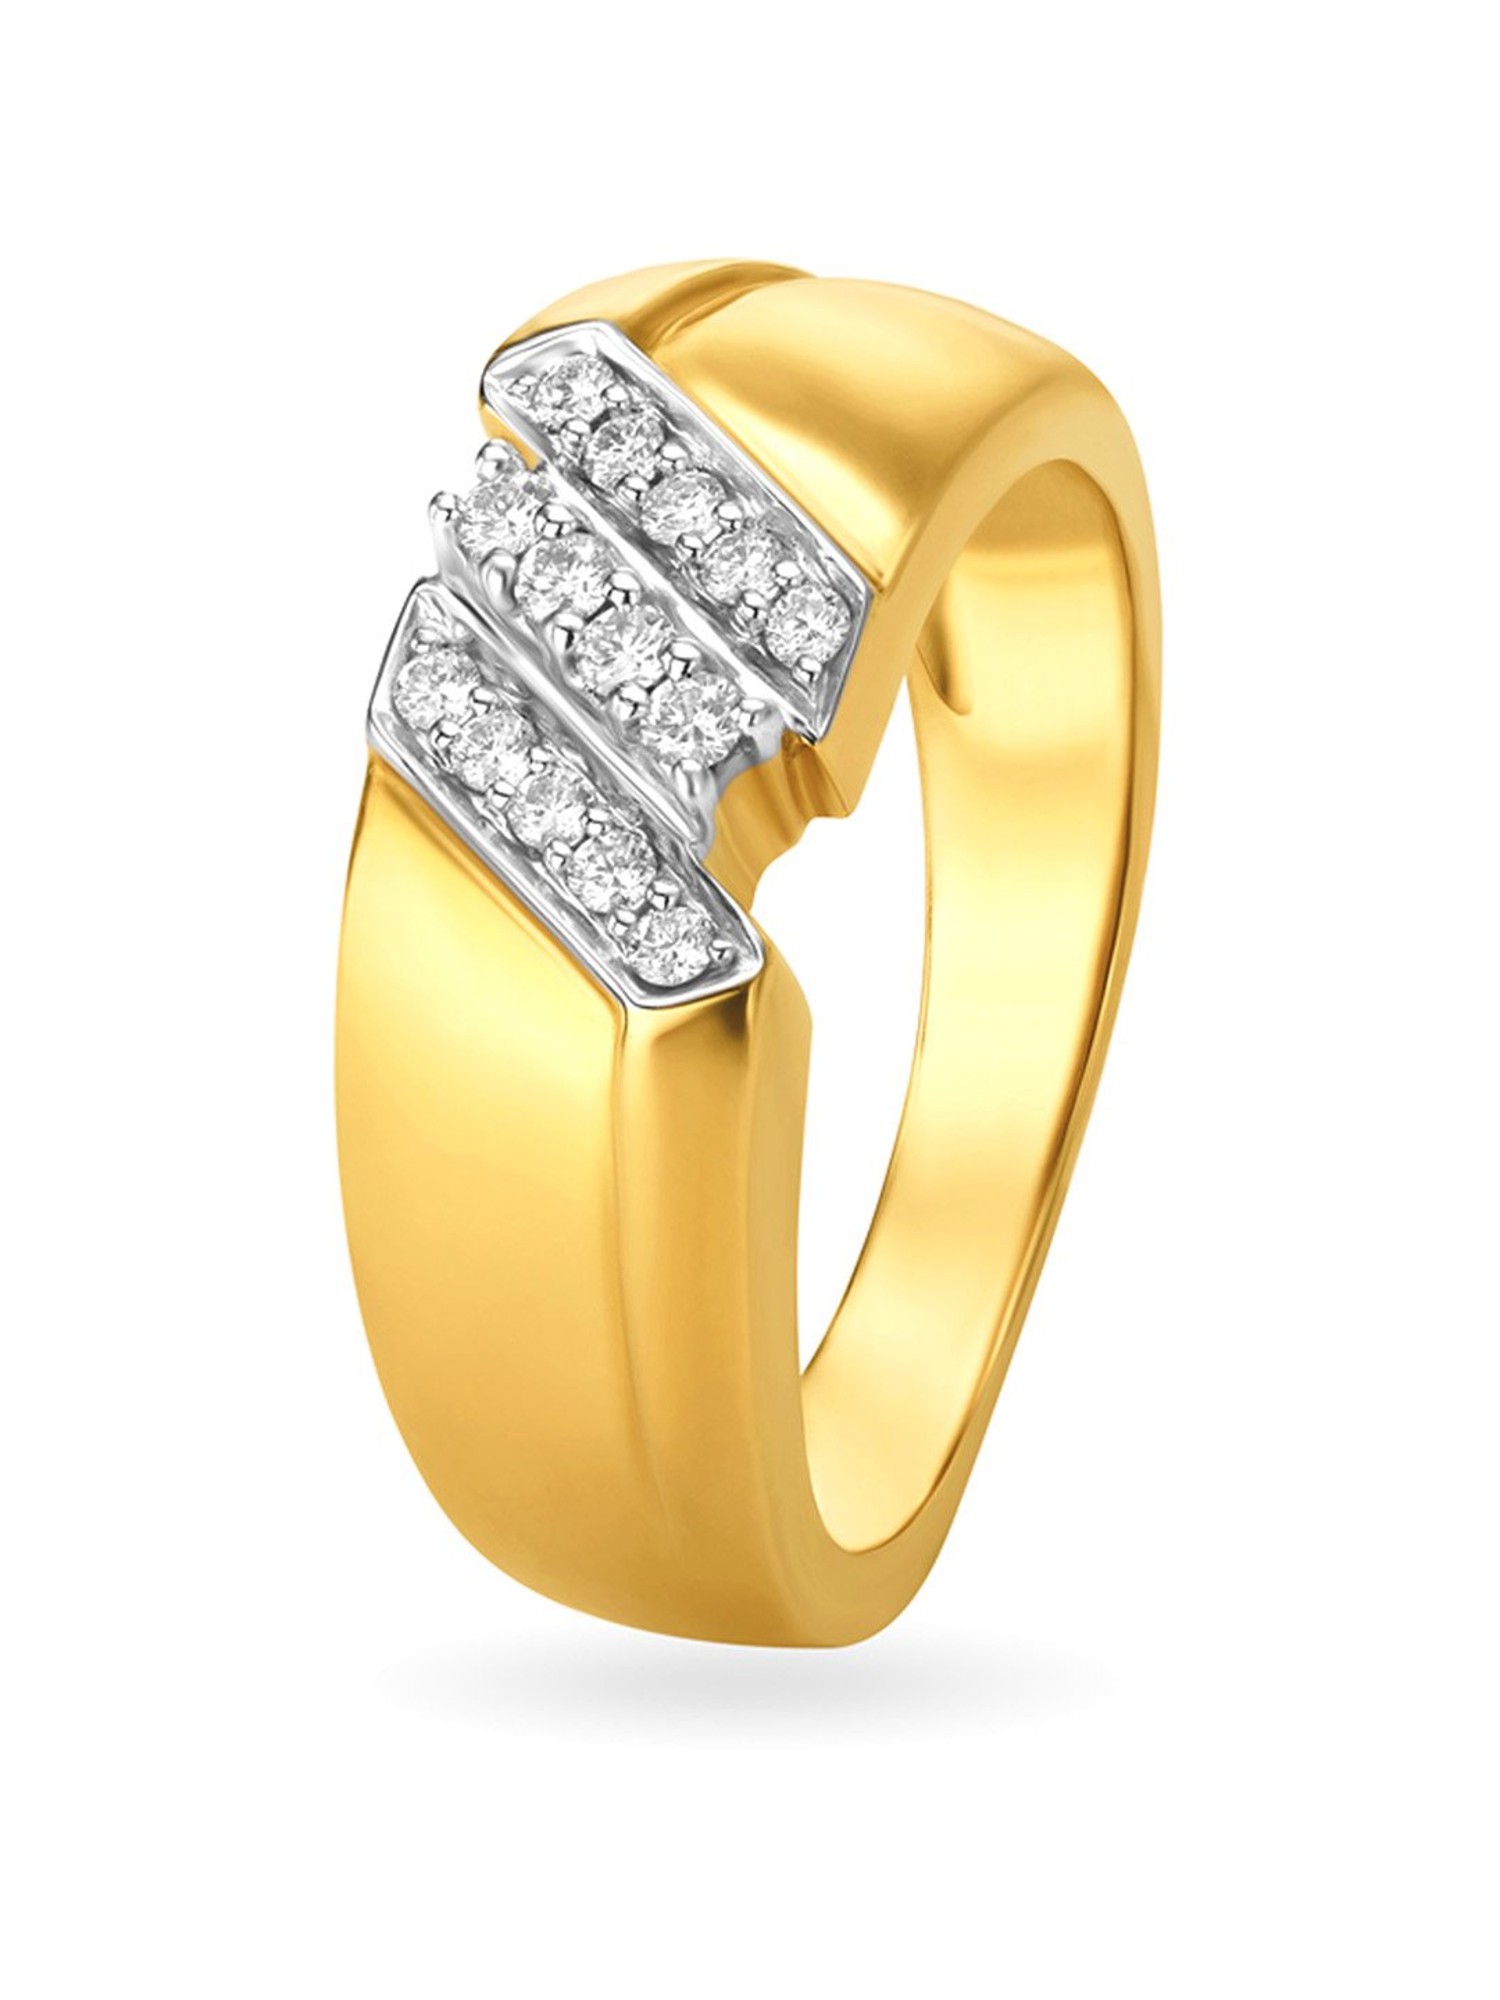 Bold Stylish Diamond Ring for Men